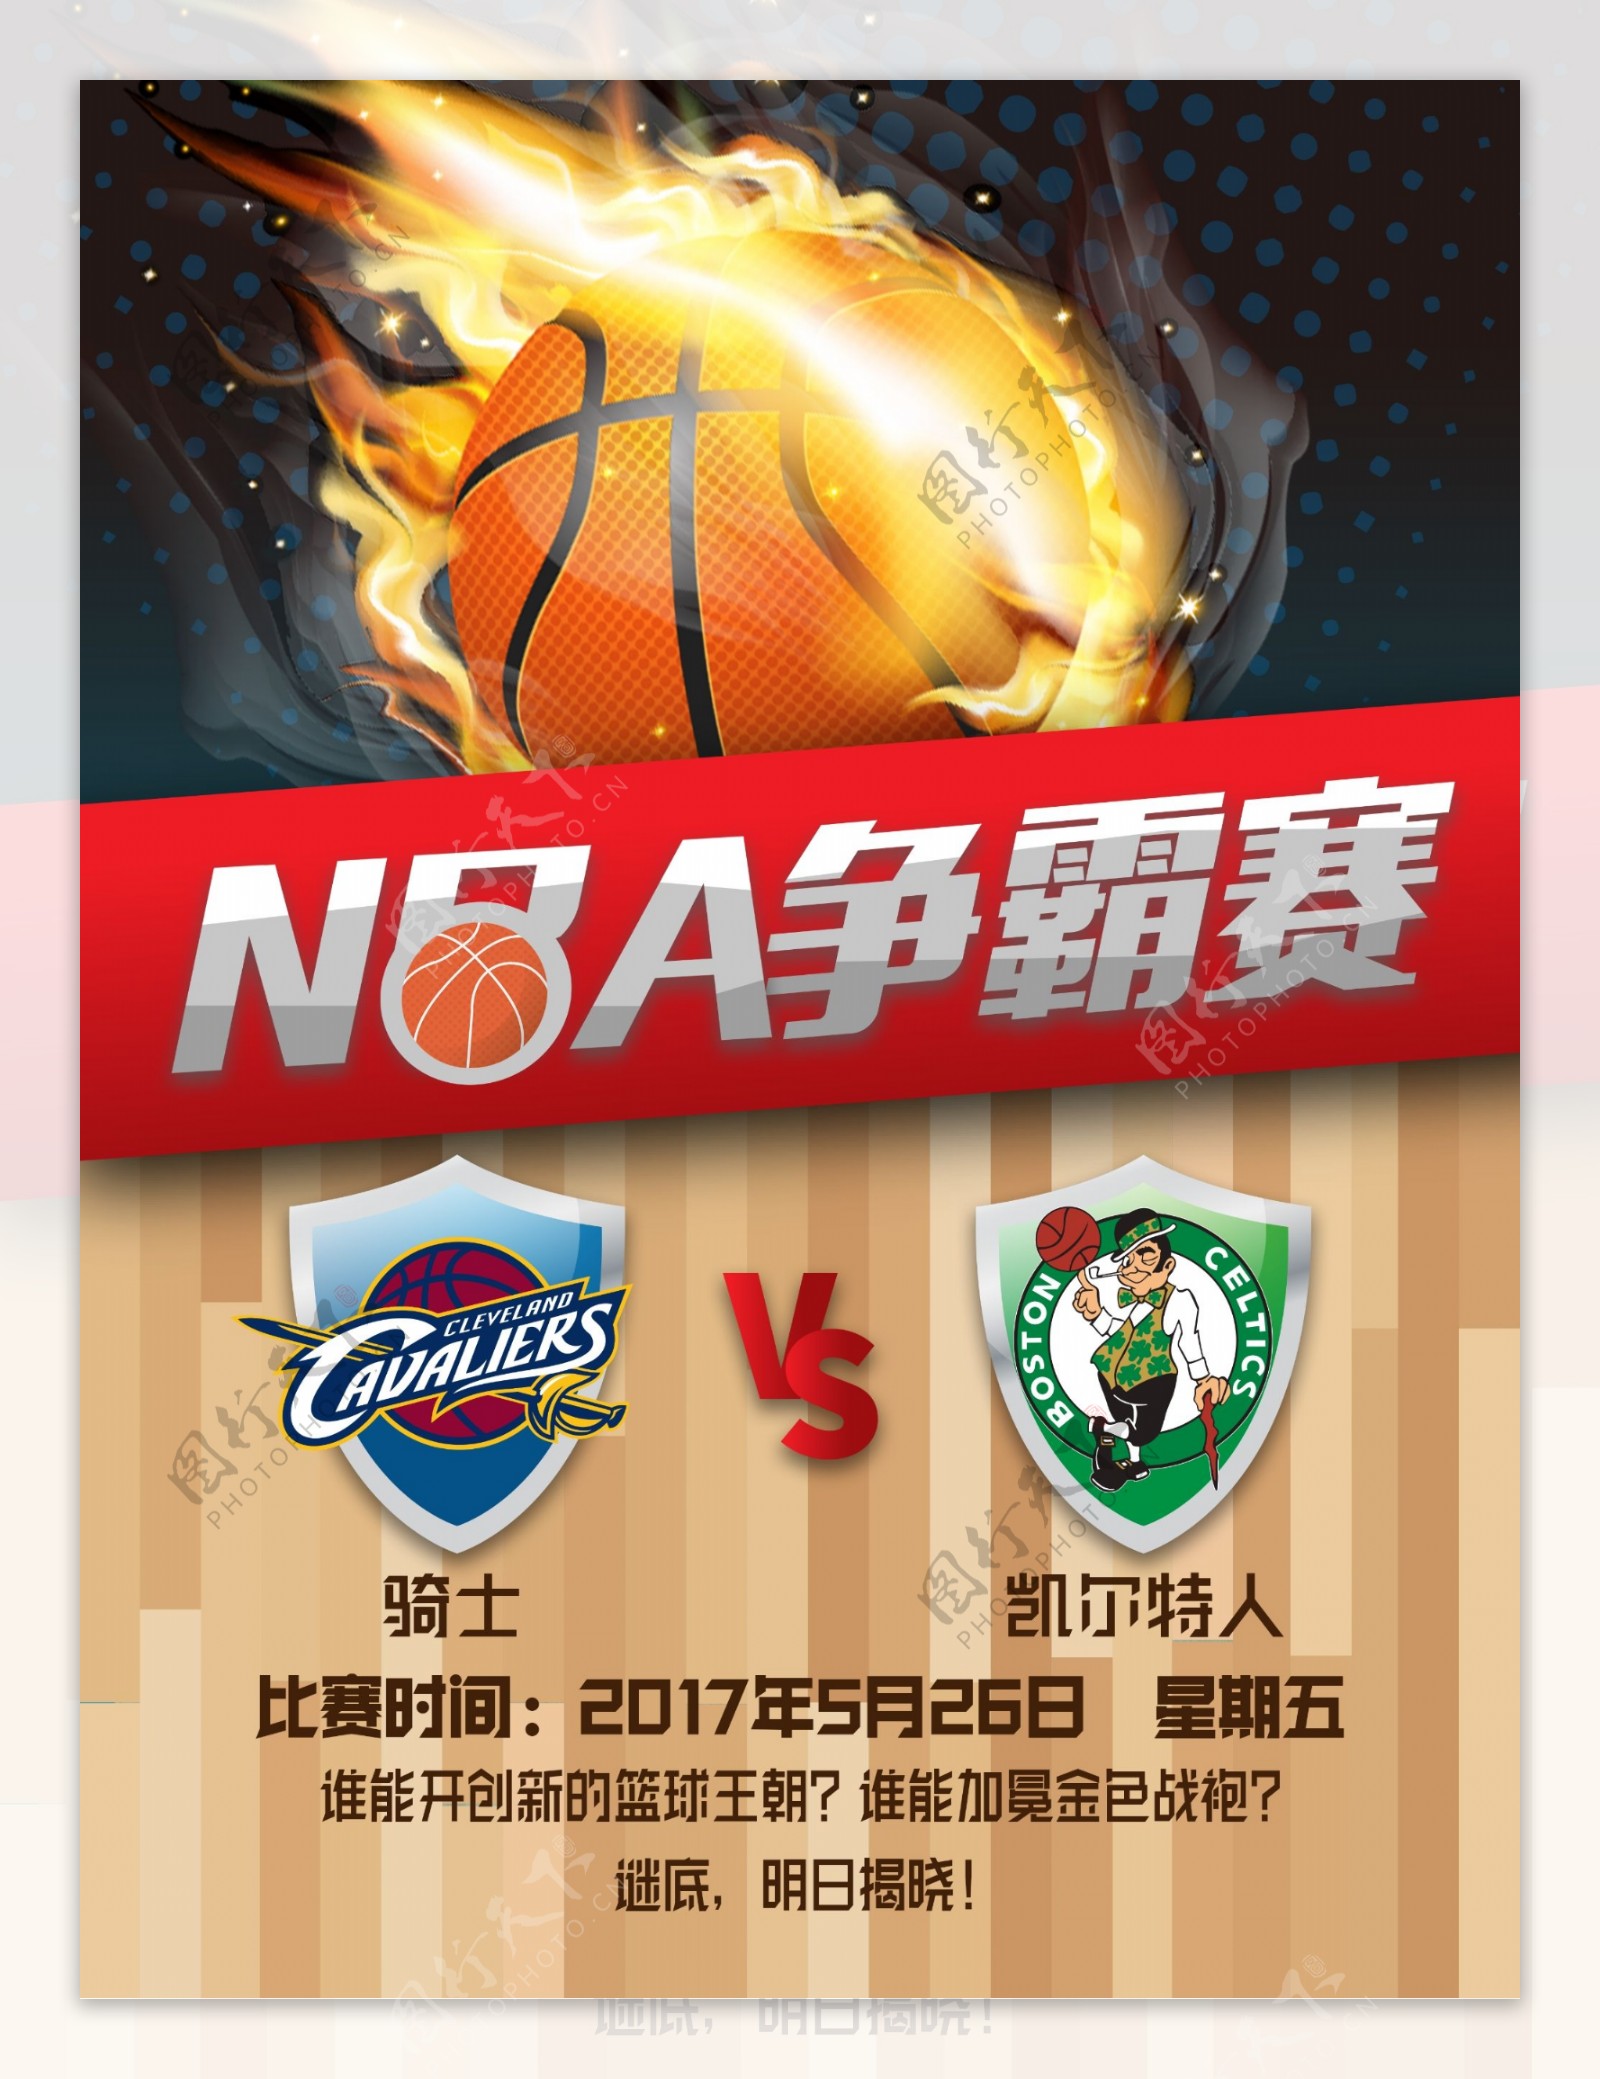 酷炫NBA篮球争霸赛宣传海报